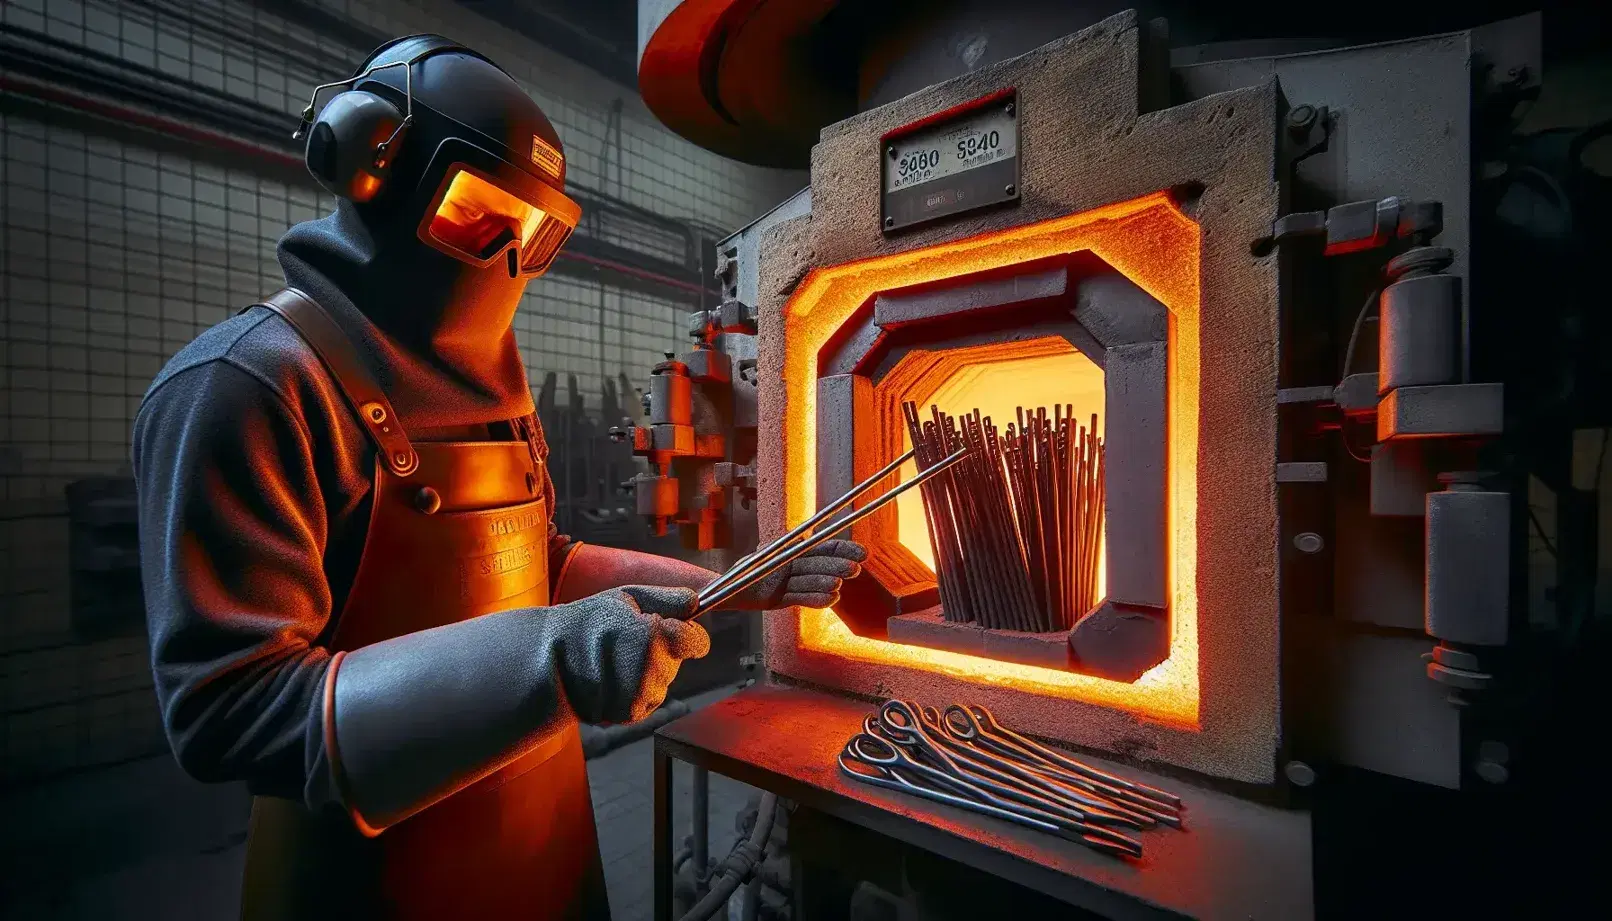 Horno industrial de alta temperatura abierto con piezas de acero al rojo vivo y trabajador con equipo de protección manipulándolas.